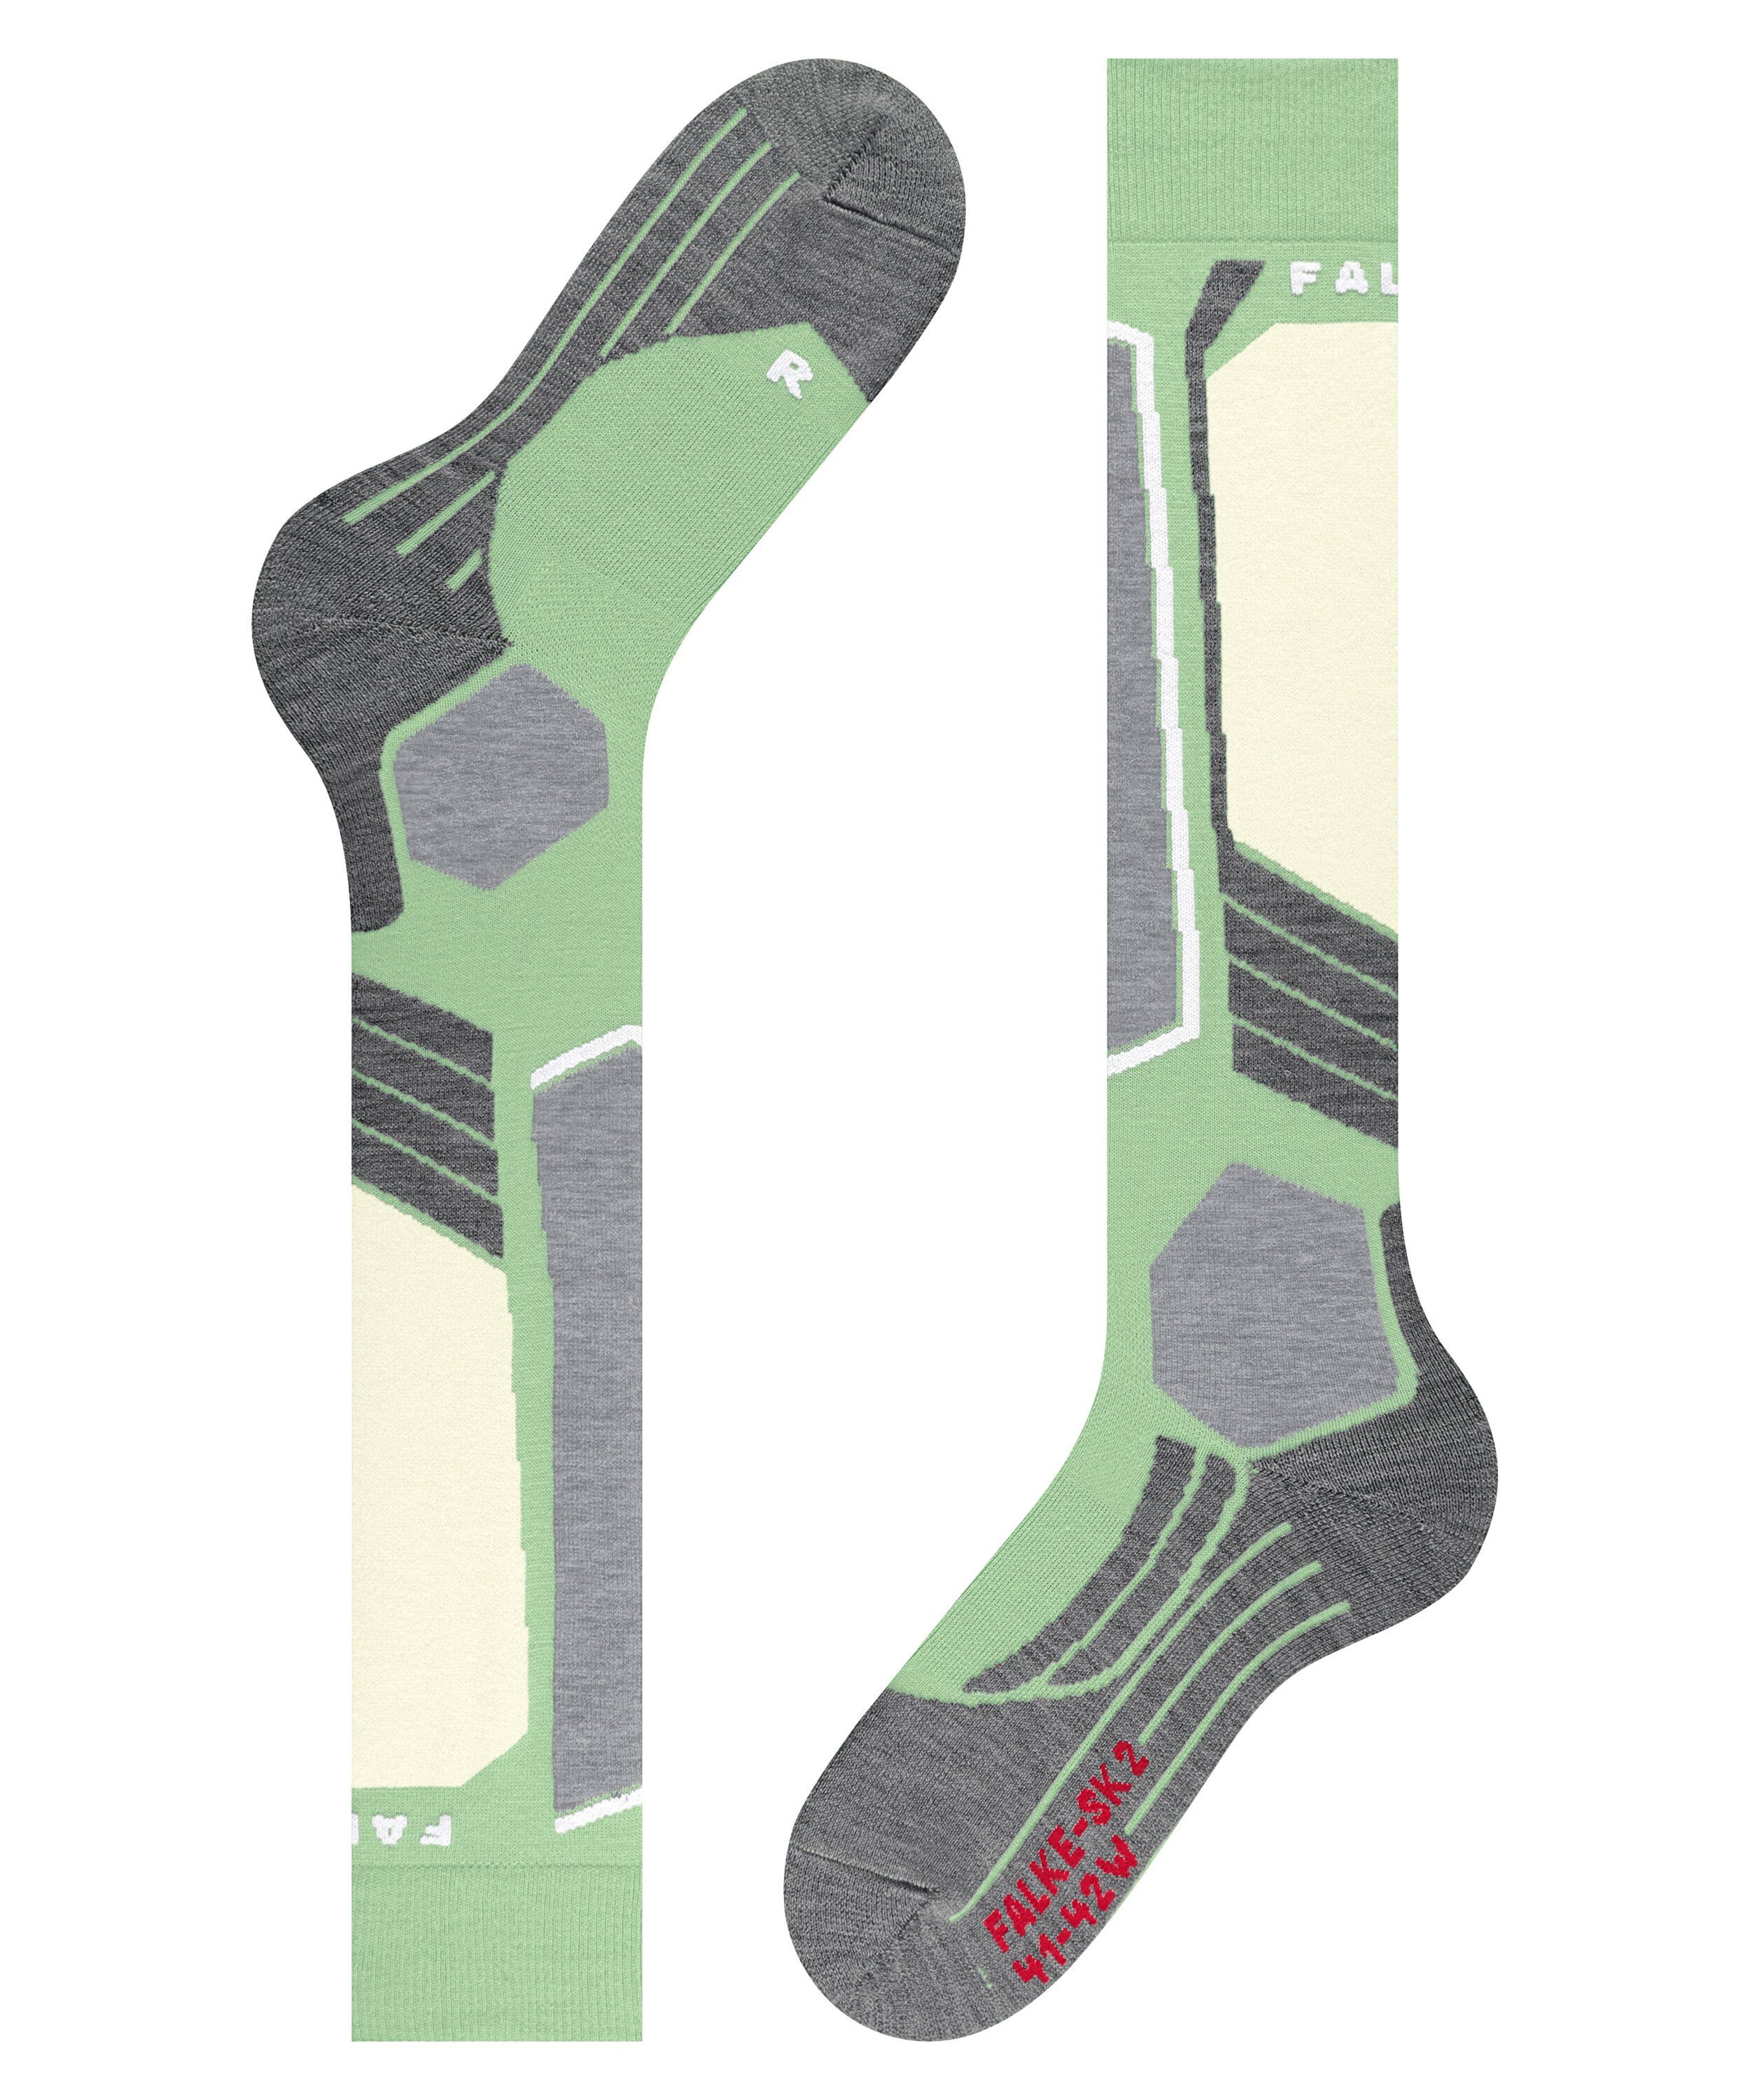 FALKE Skisocken mittelstarker (1-Paar) Kontrolle mit Komfort und green SK2 quiet (7378) Intermediate für Polsterung